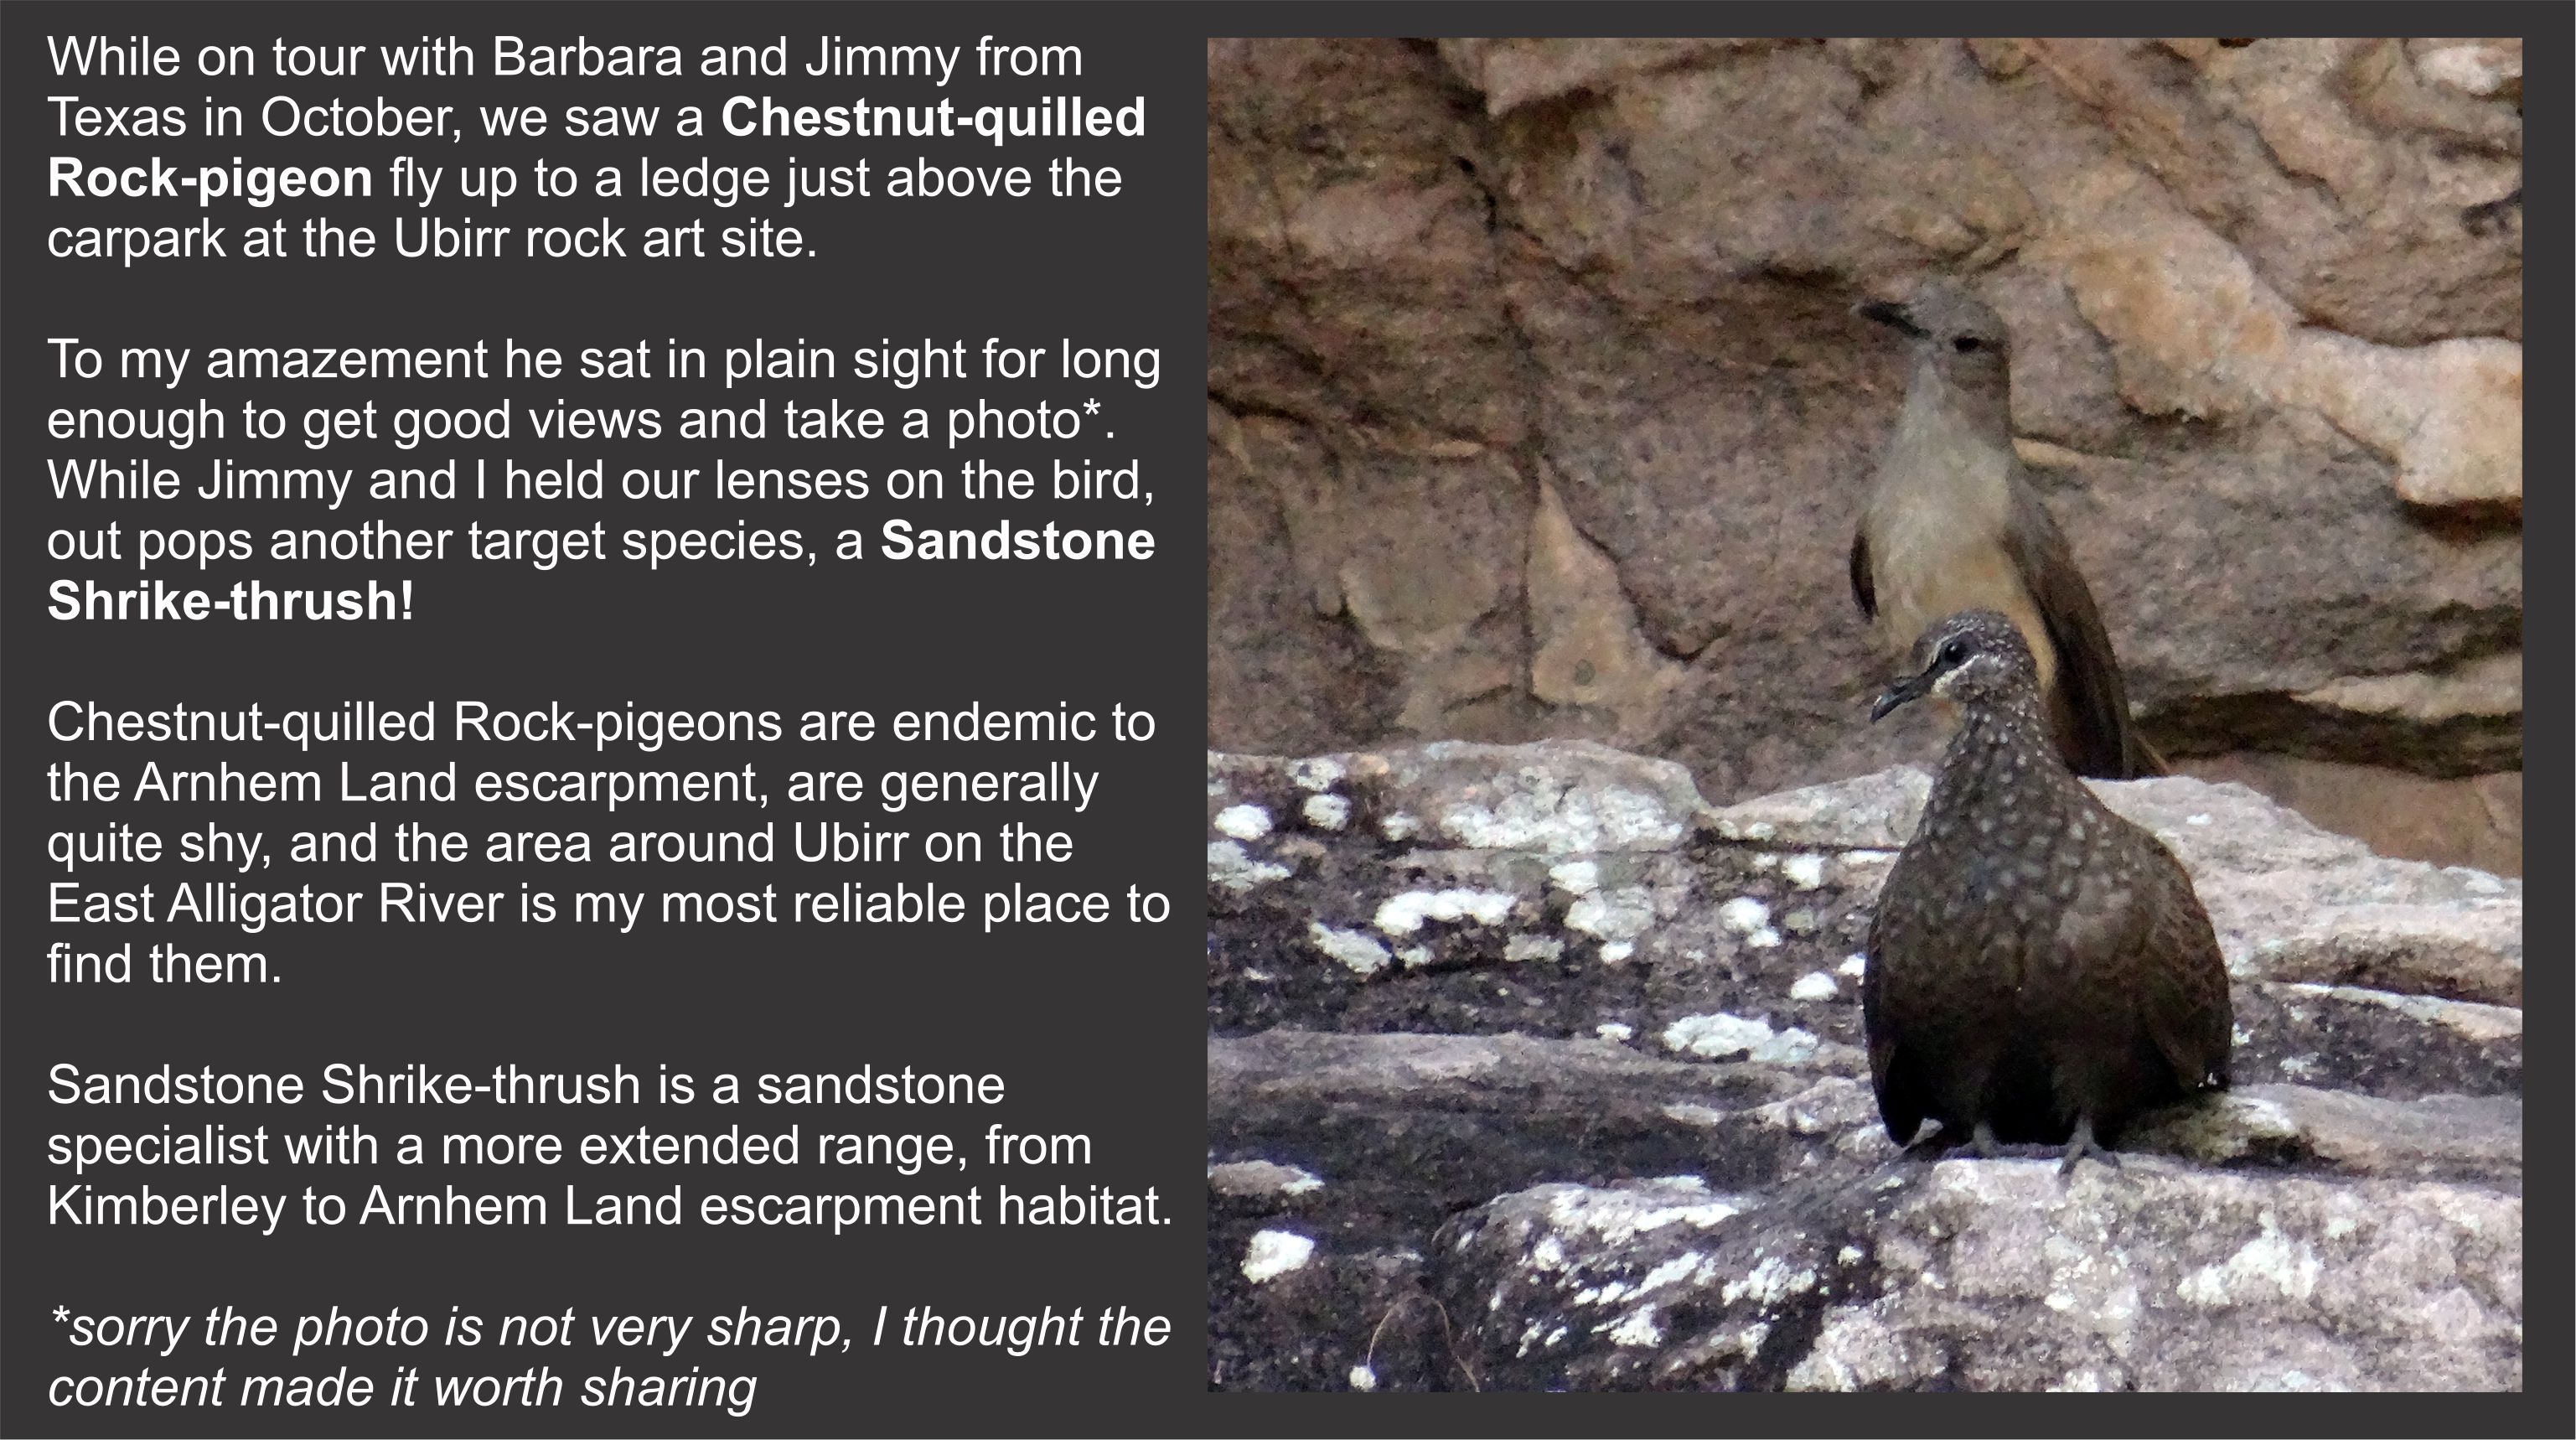 Chestnut-quilled Rock-pigeon and Sandstone-Shrike-thrush at Ubirr